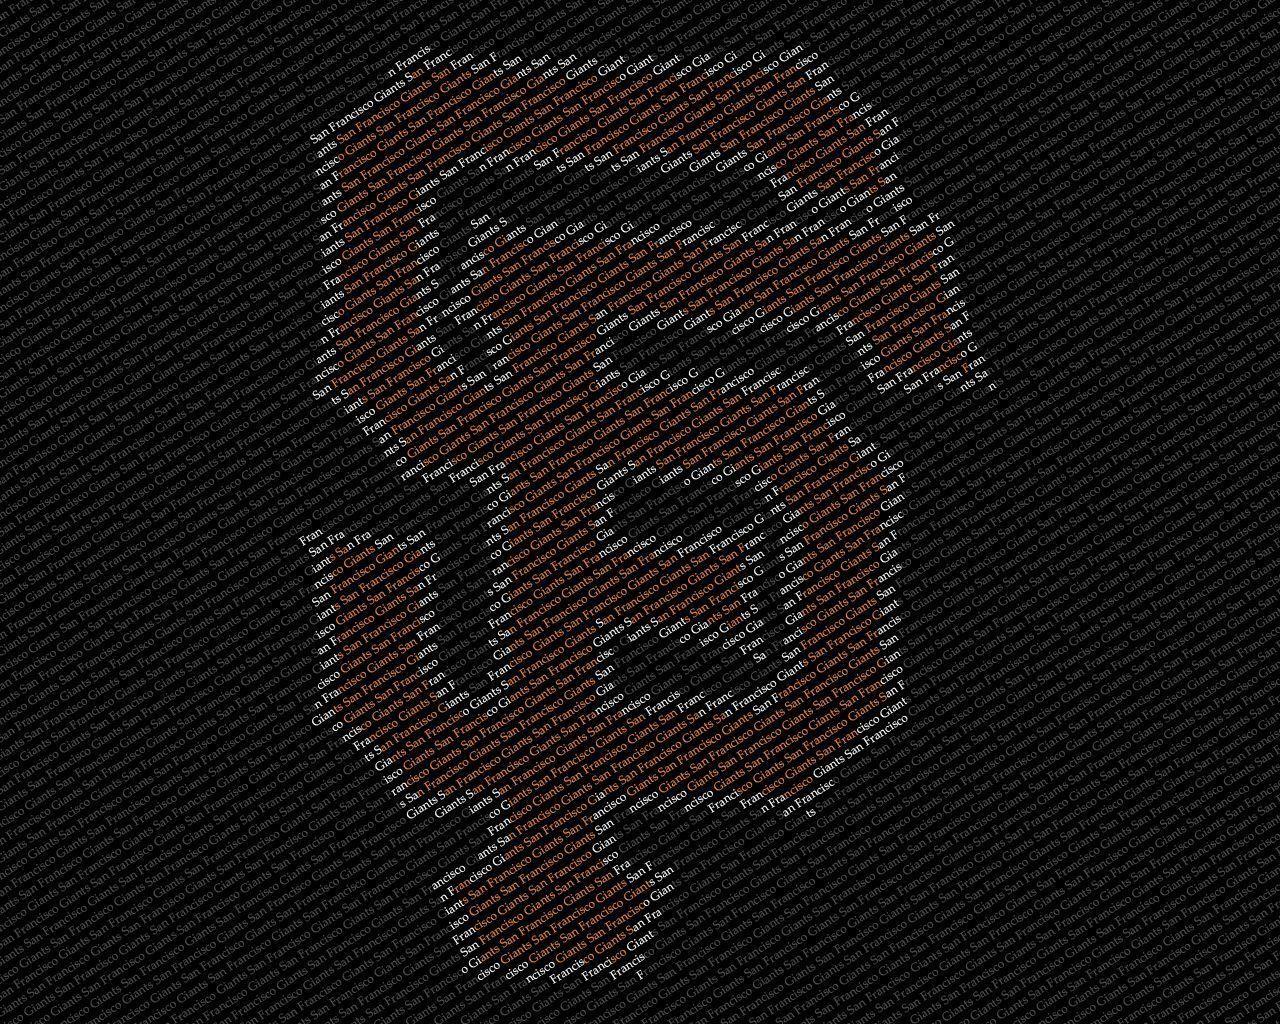 image For > Sf Giants Logo Wallpaper